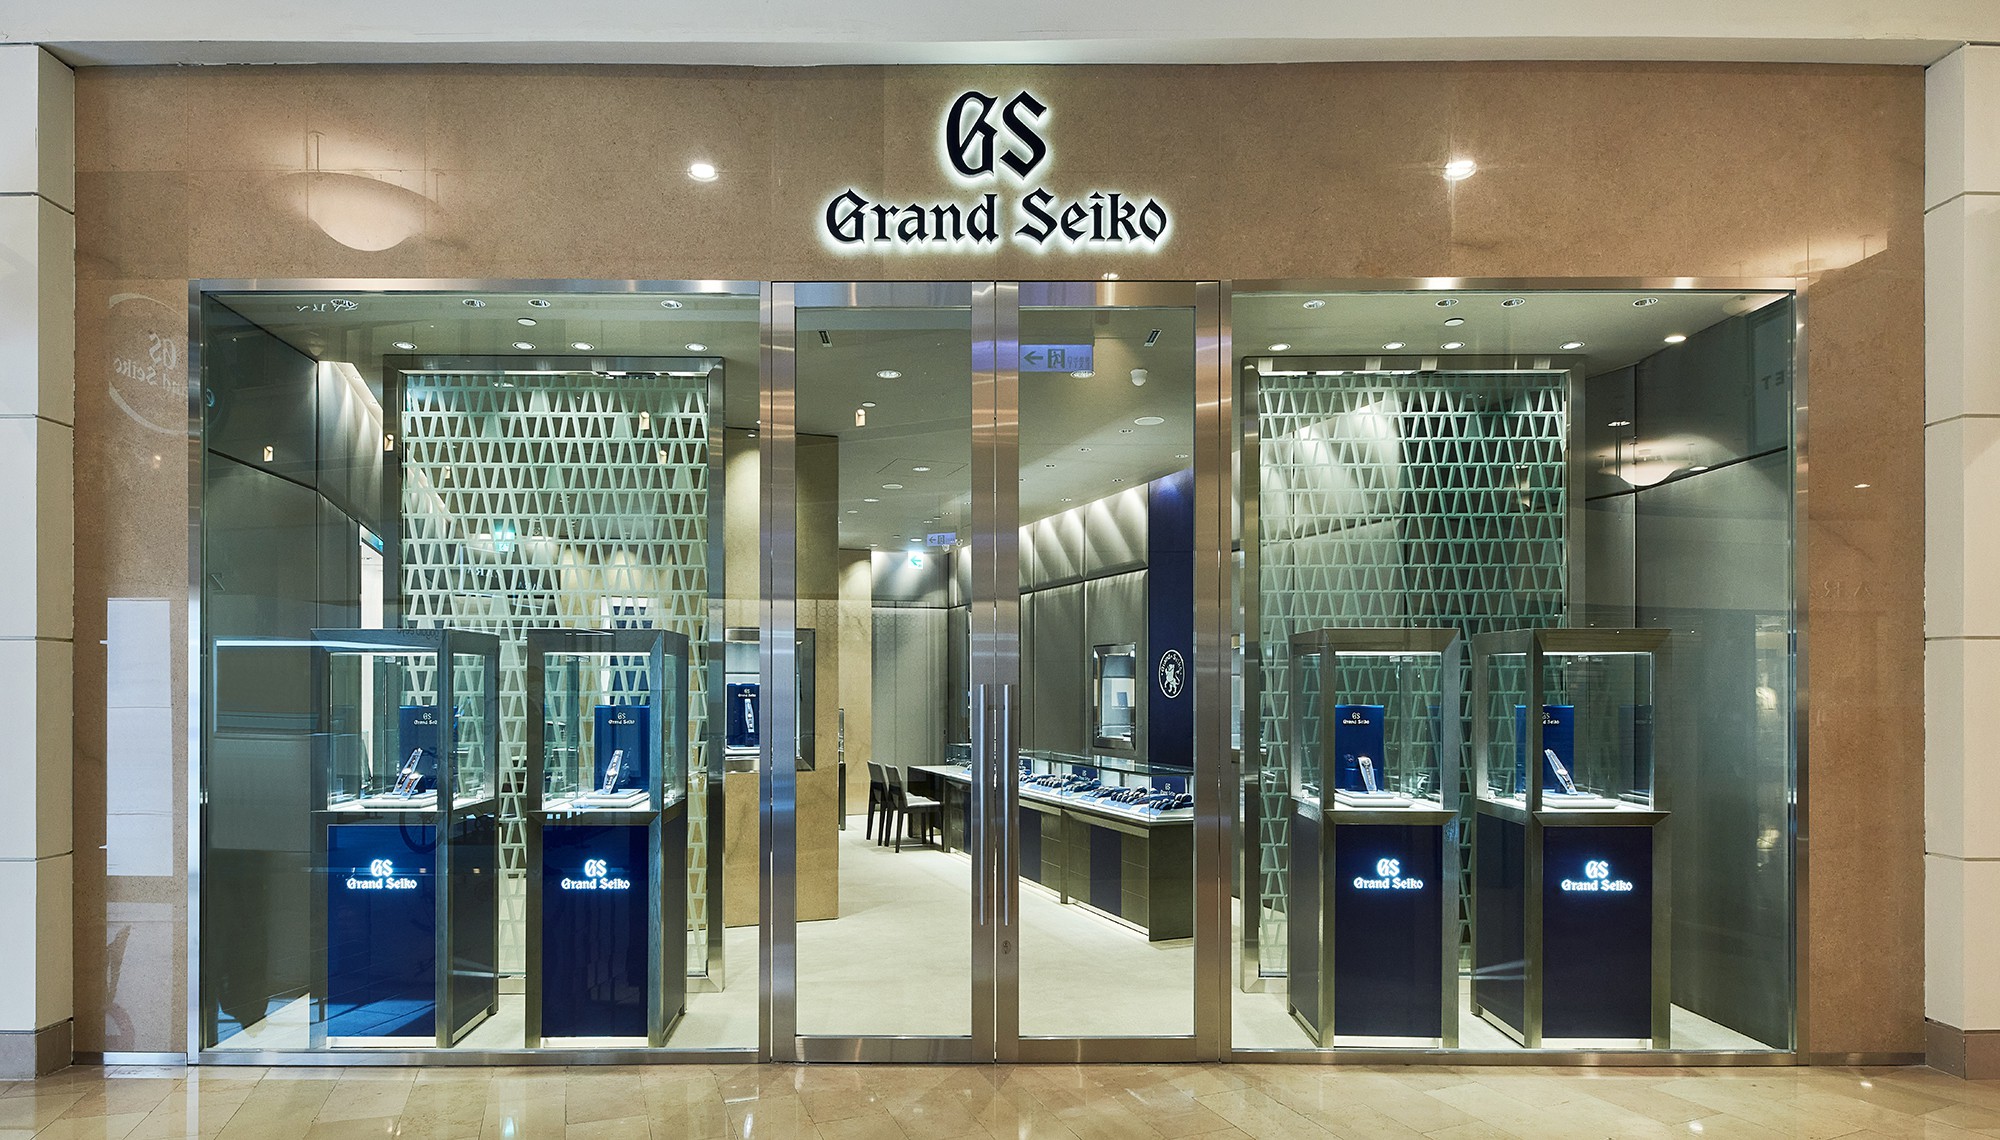 Grand Seiko Boutique in Taipei 101 skyscraper is now open. | Grand Seiko